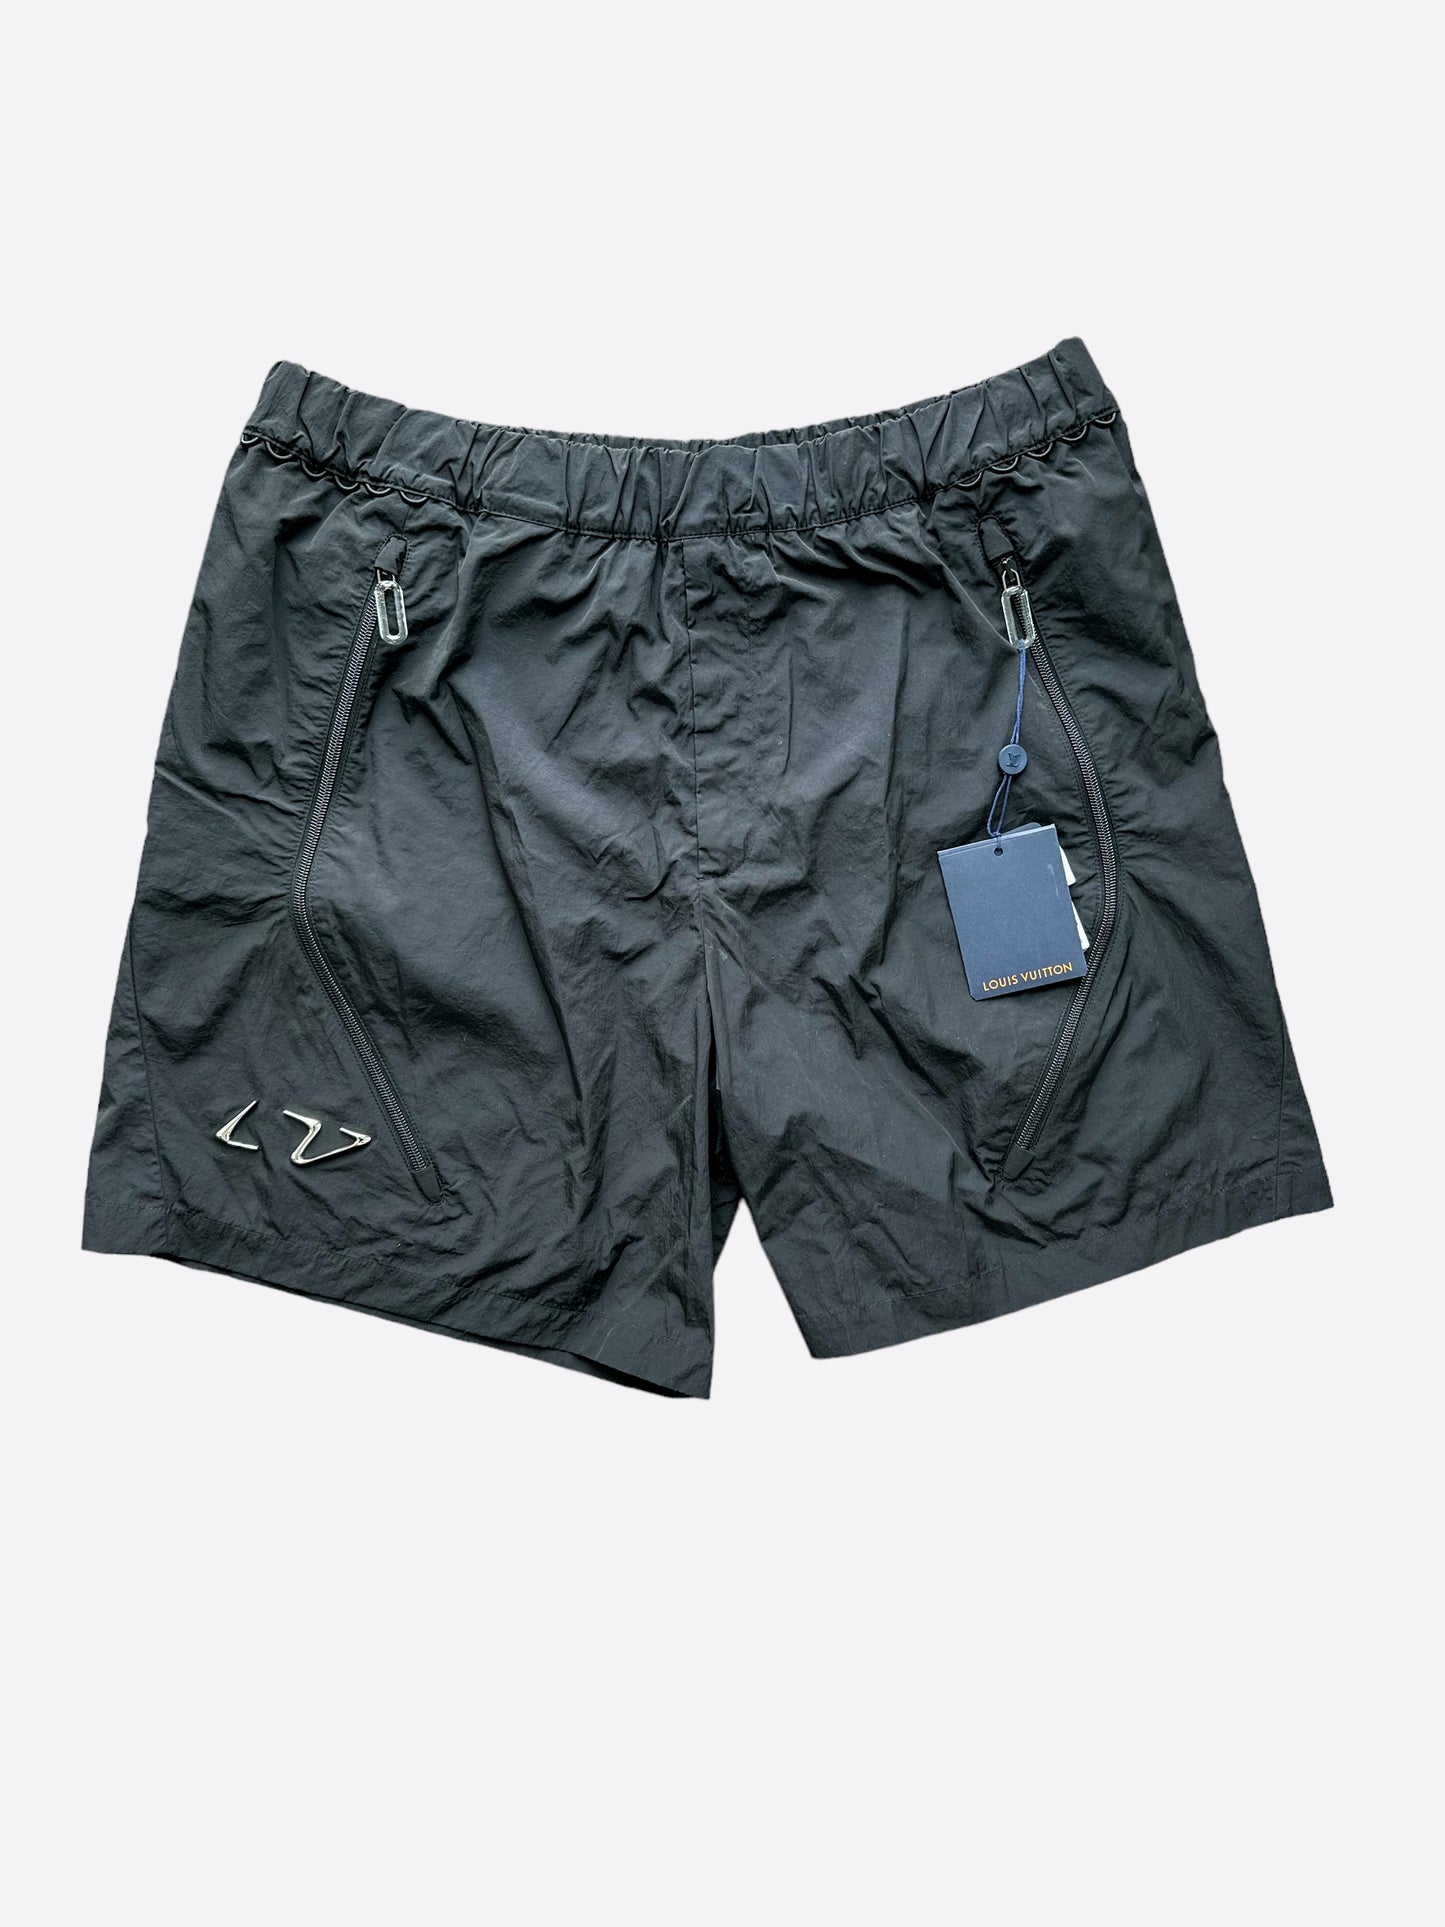 Louis Vuitton Black 2054 Athletic Shorts